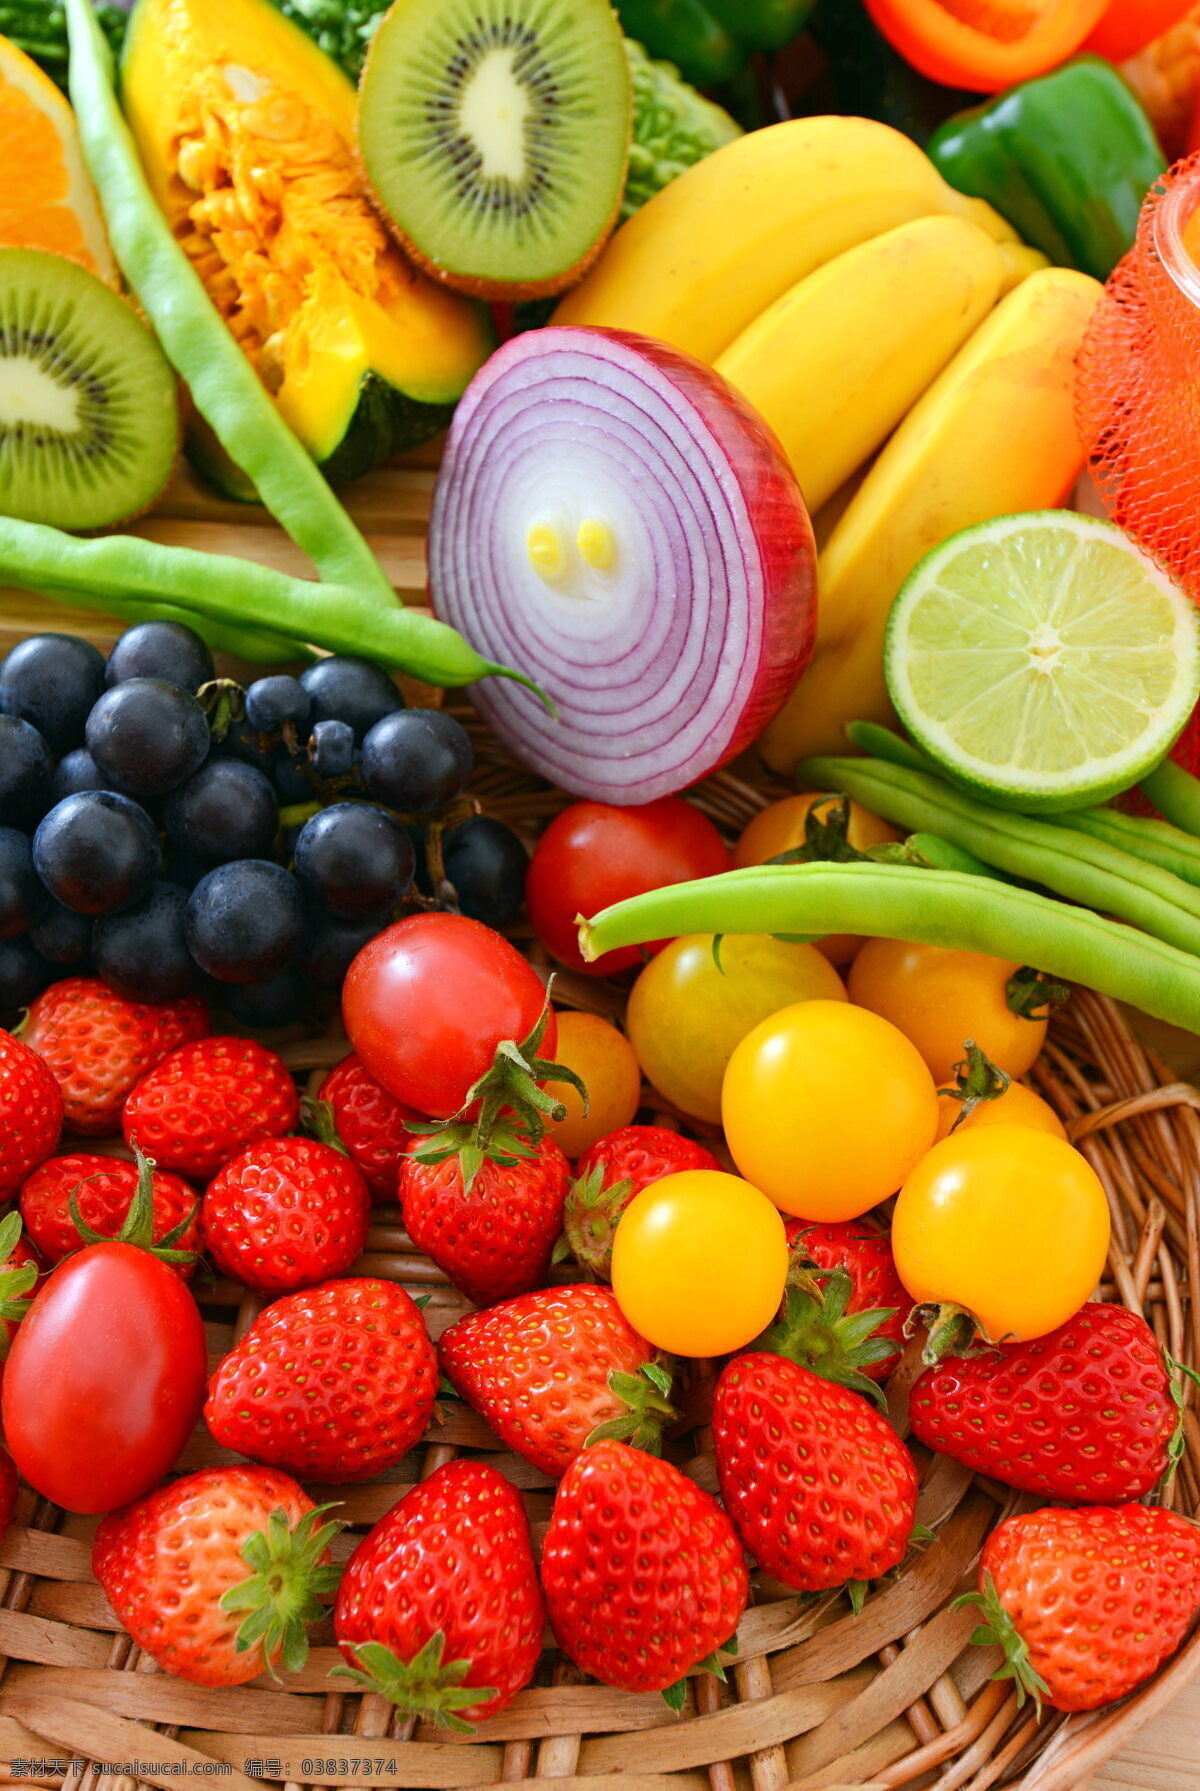 蔬菜和水果 食物 蔬菜 食品 新鲜 美味 美食 素食 蔬菜水果 水果 水果蔬菜 生物世界